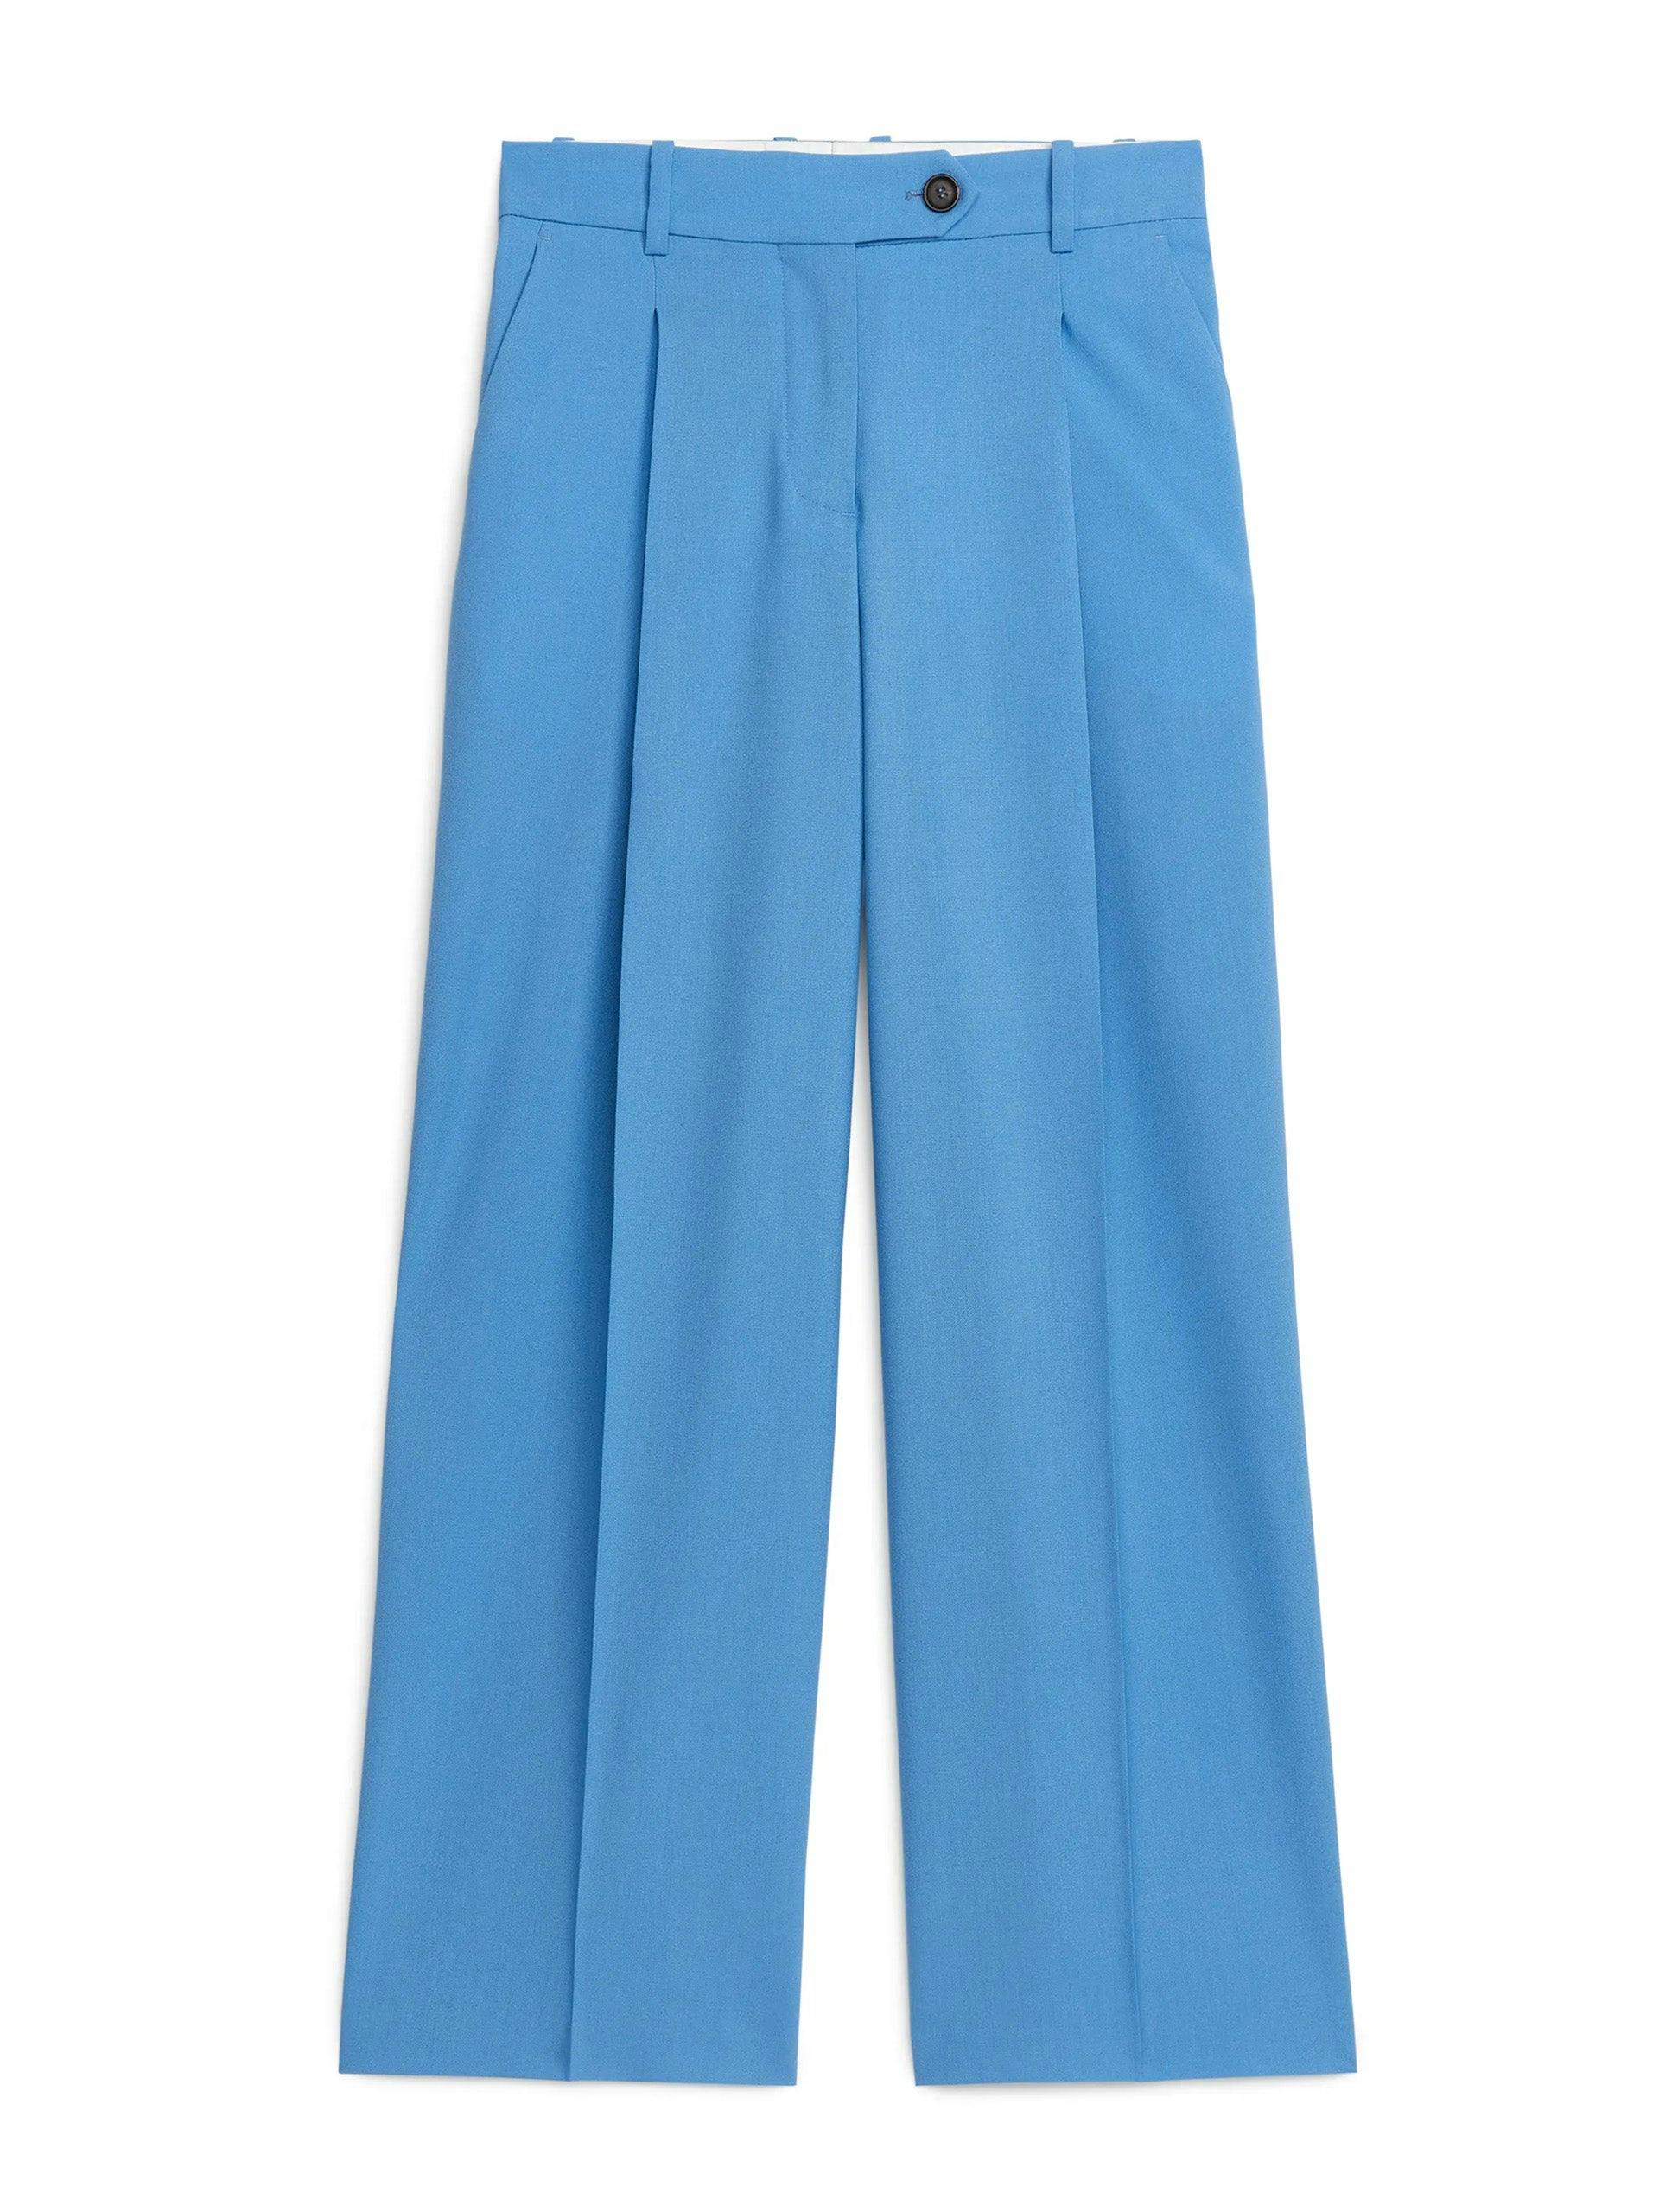 Wide blue wool trousers